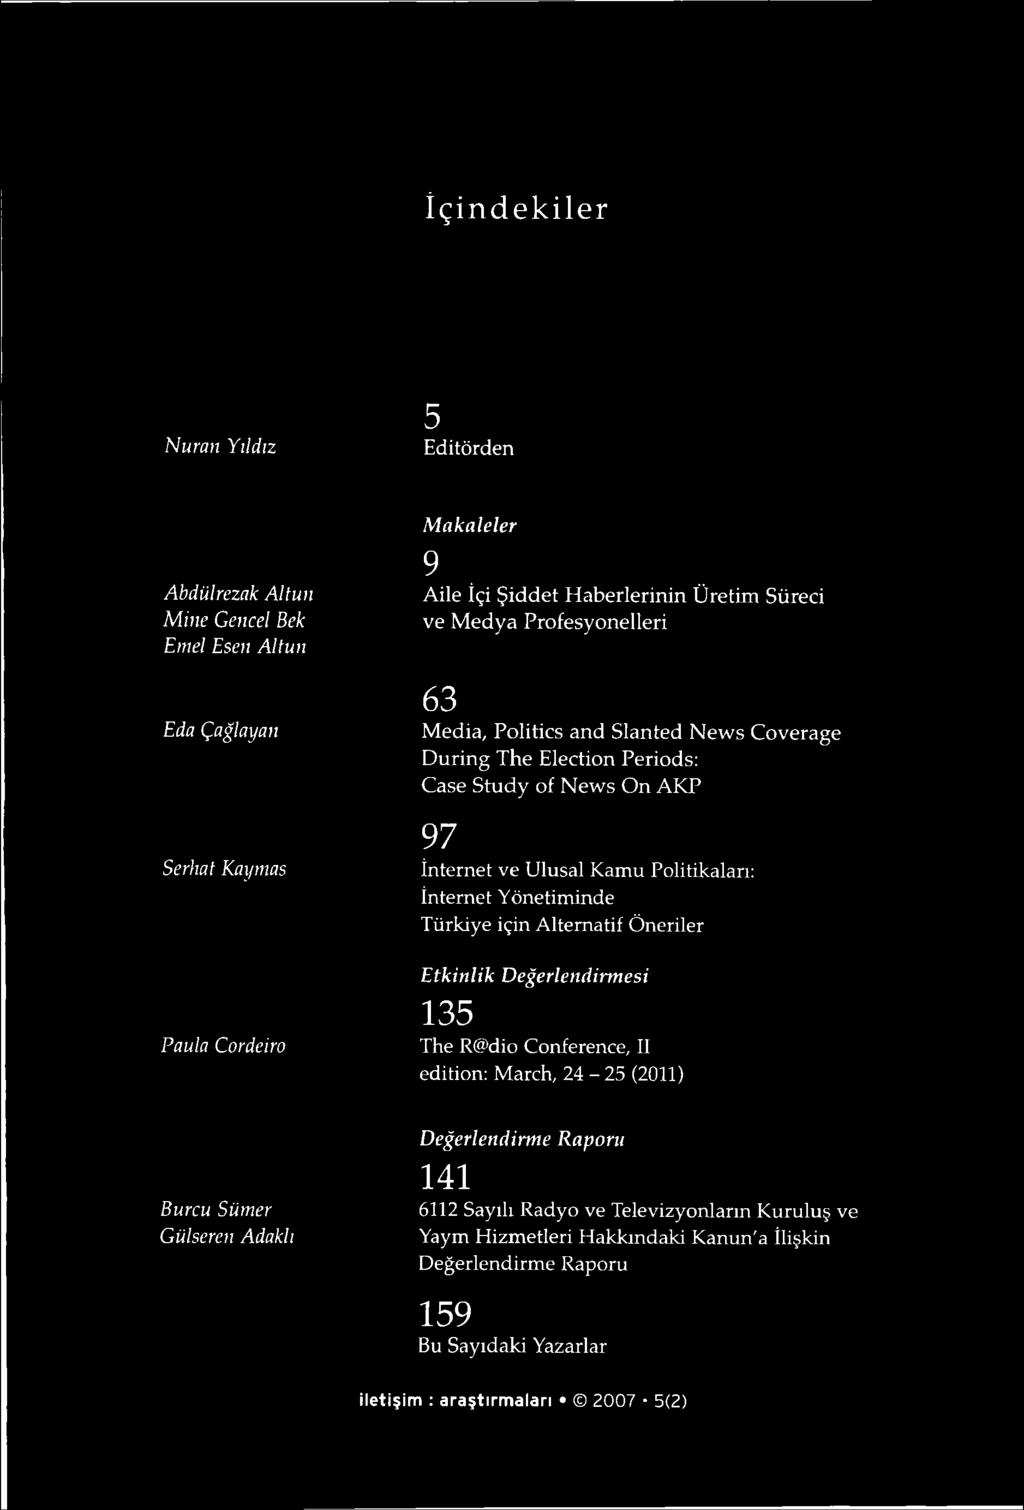 İnternet Yönetim inde Türkiye için A lternatif Ö neriler Etkinlik Değerlendirmesi Paula Cordeiro 135 The R@ dio C onference, II edition: M arch, 24-25 (2011) Değerlendirme Raporu Burcu Sümer